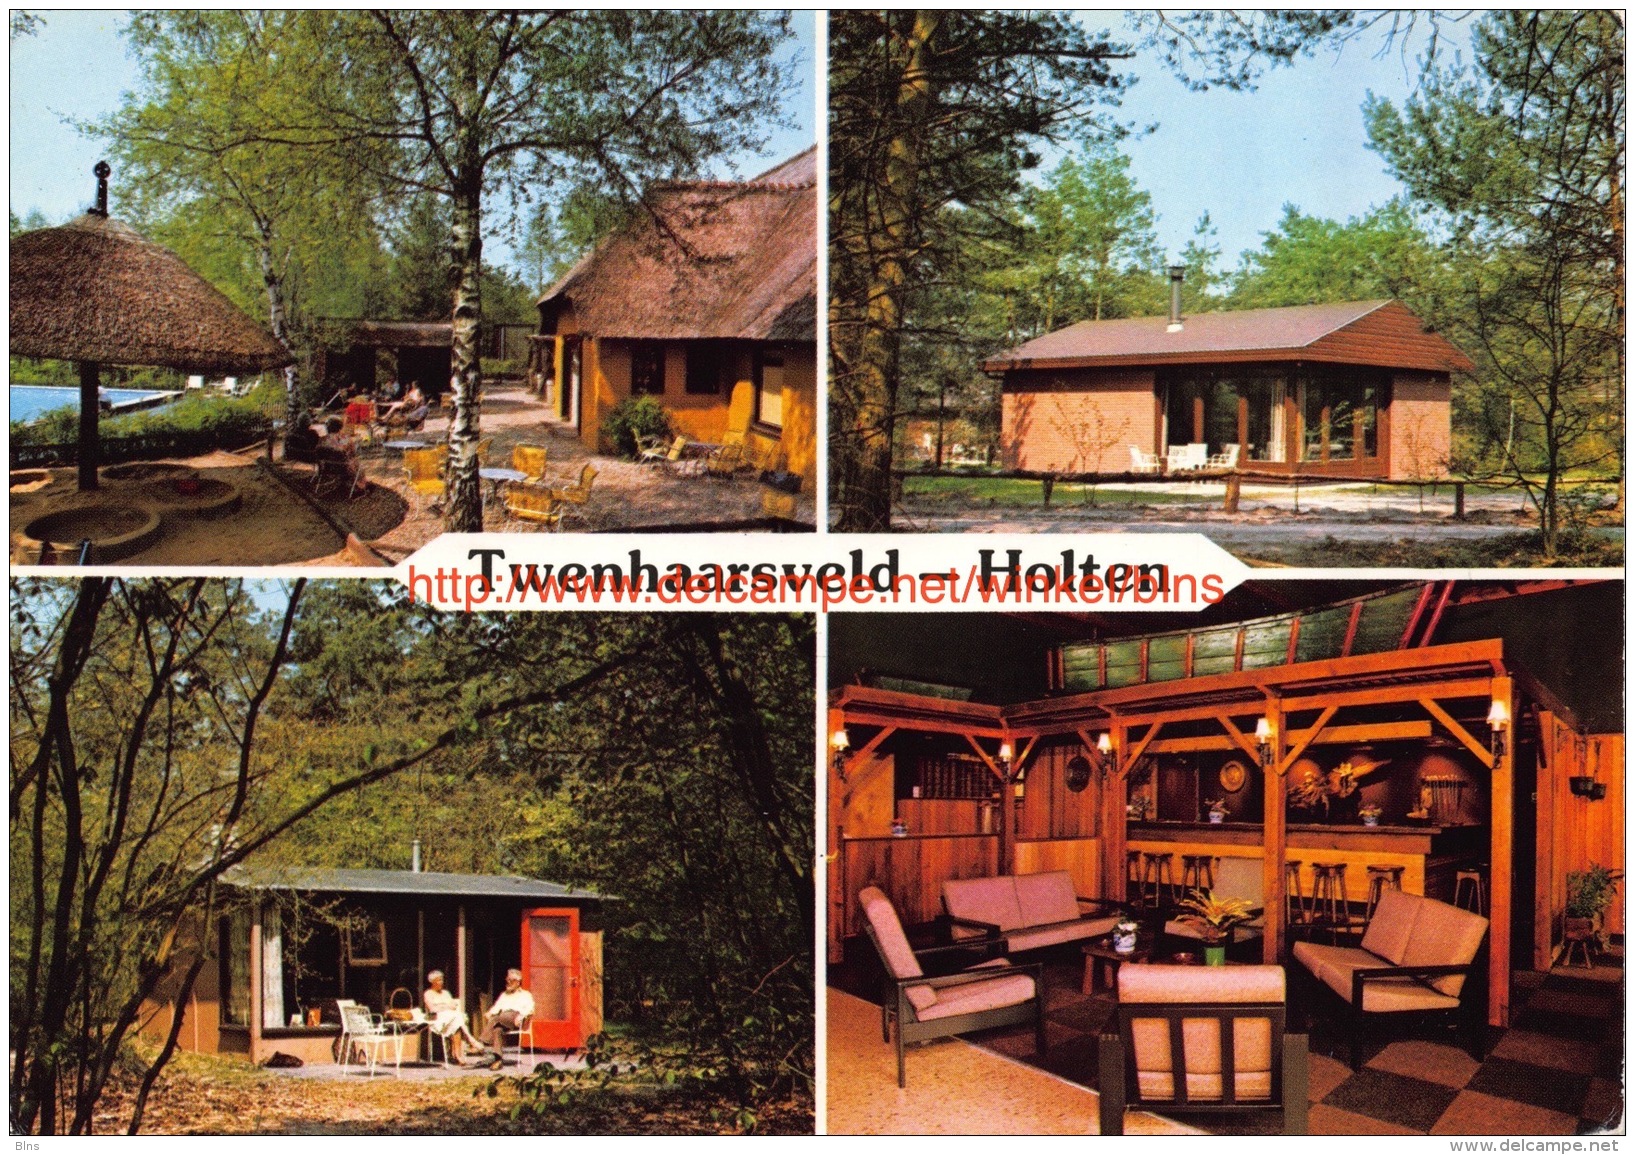 Vakantieverblijf Twenhaarsveld - Holten - Holten